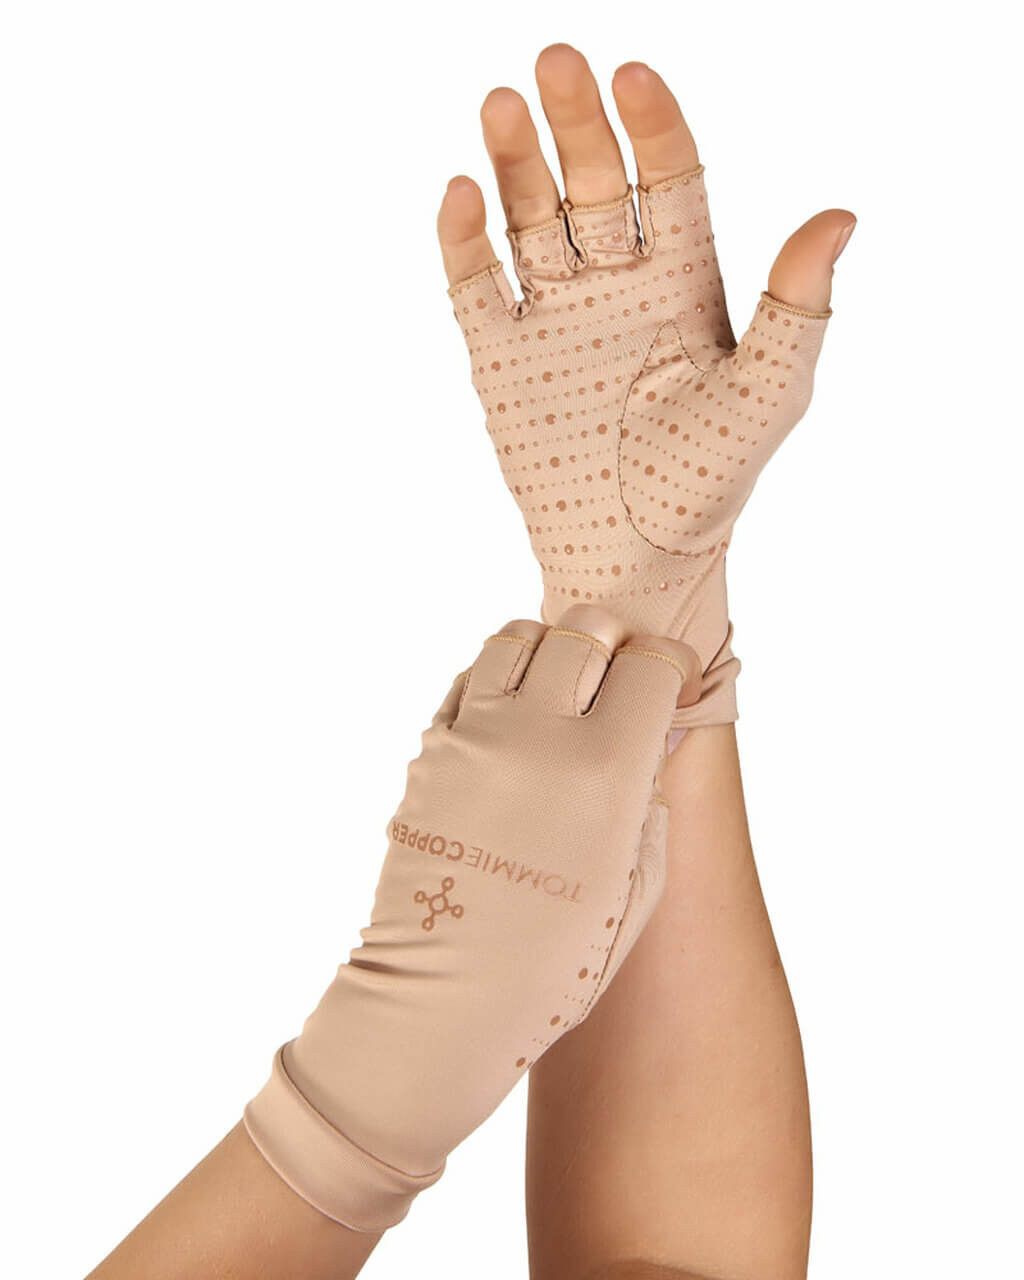 VERSATILE GLOVES THREE FINGERS / Versatile Gloves Three Fingers